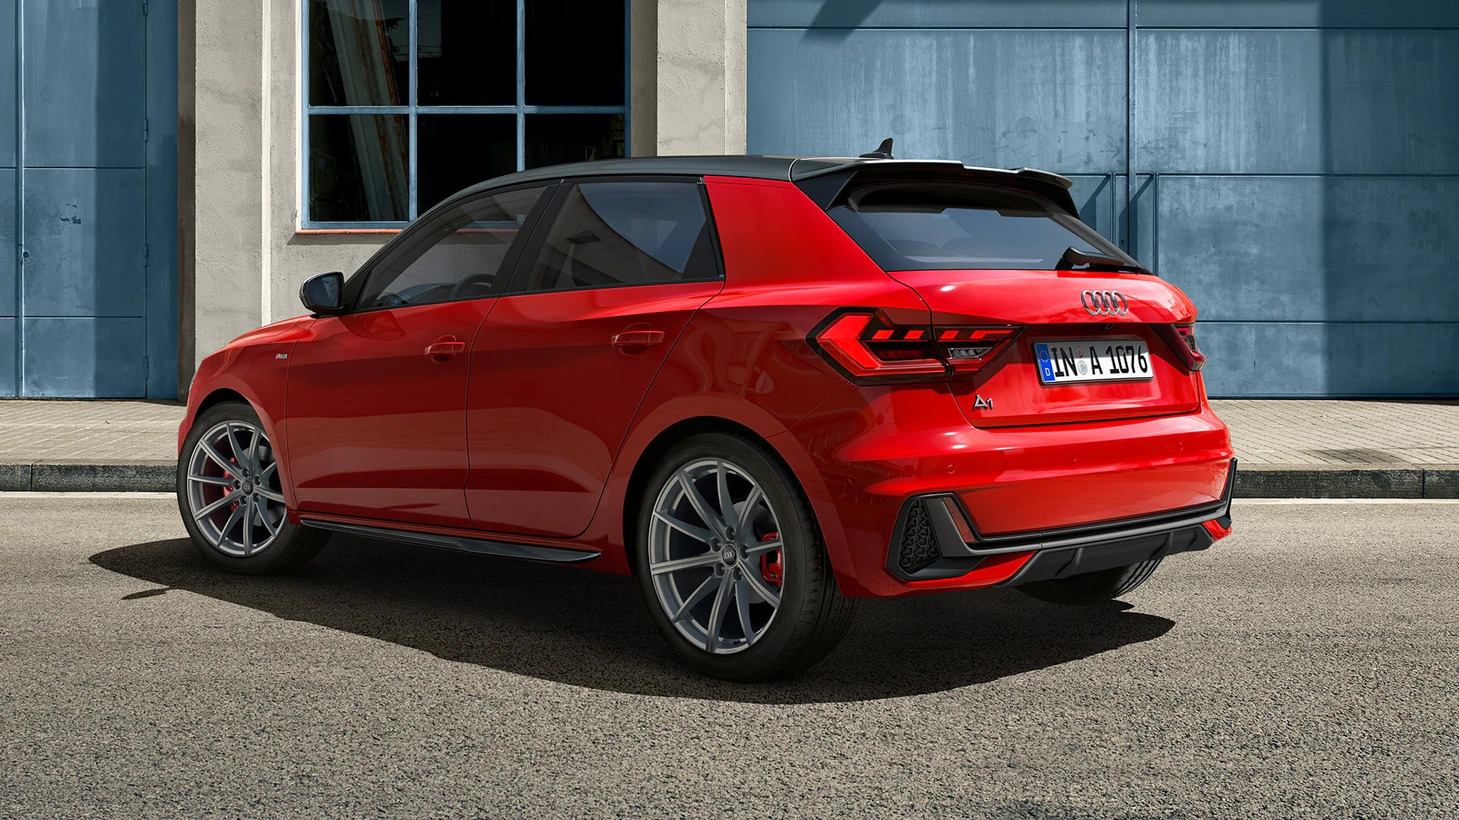 Audi A1 rood